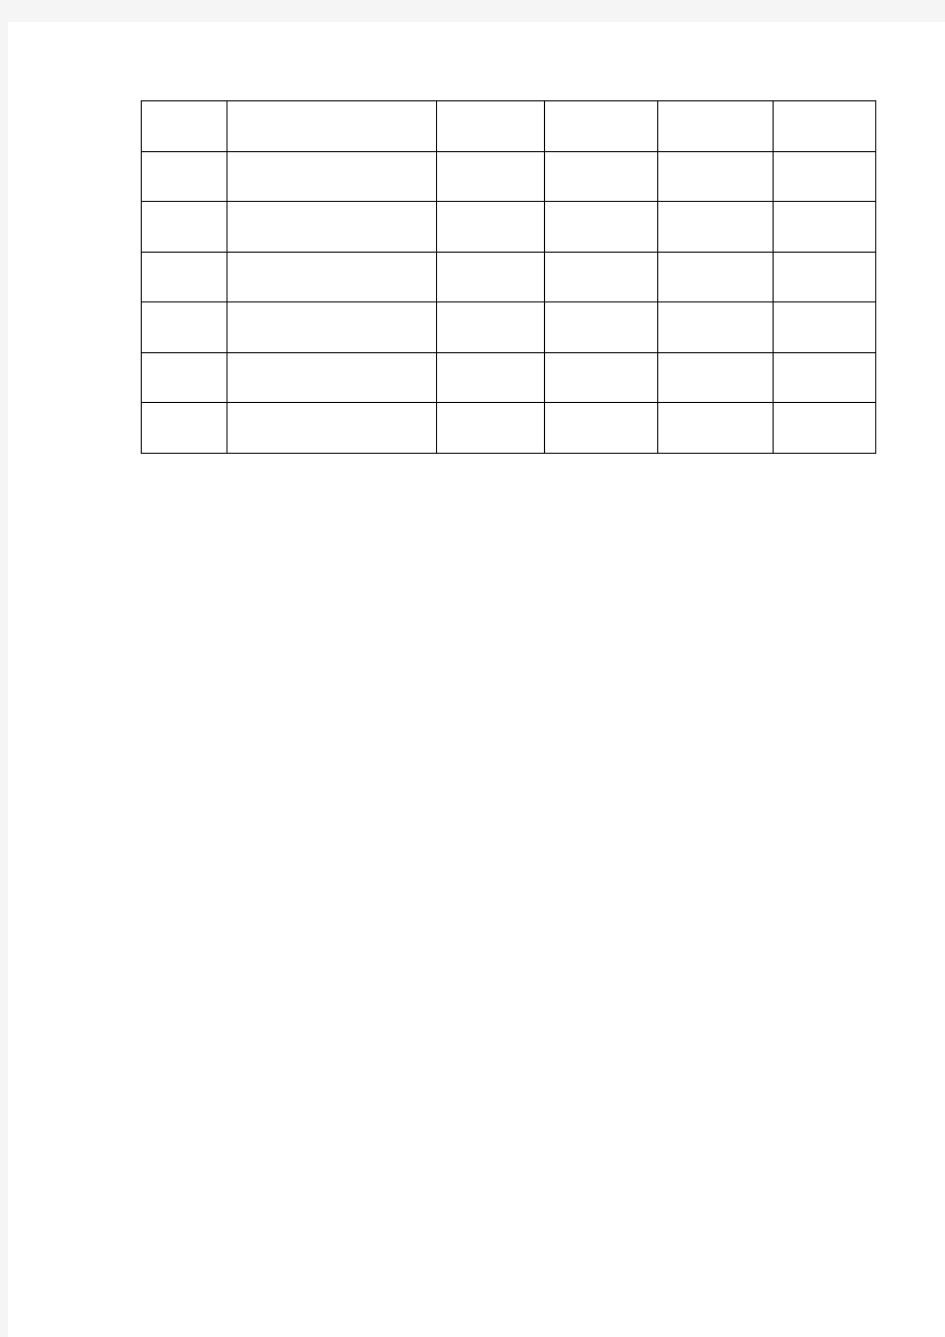 学校实验室自制教具登记表